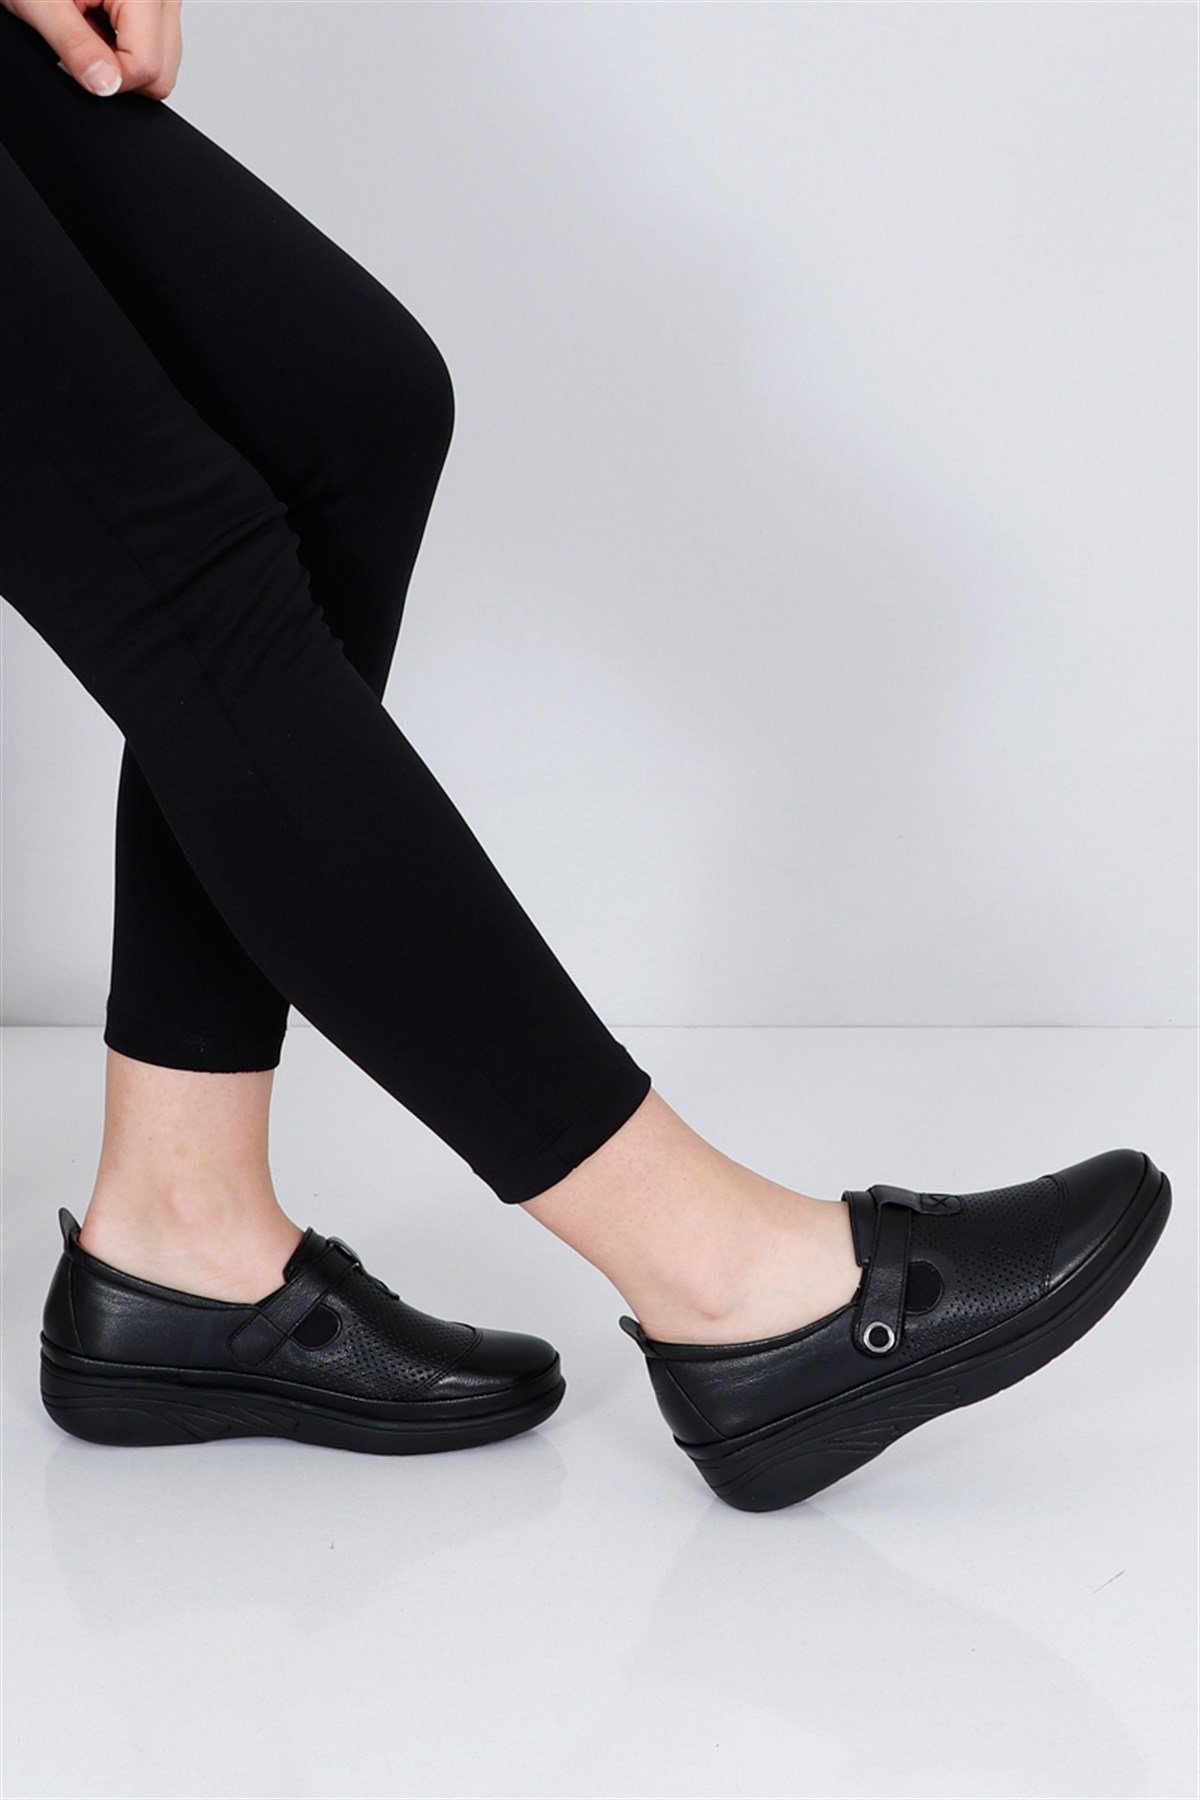 Siyah Ortopedik Dolgu Topuk Kadın Ayakkabı 2023 Fiyatı ve Modelleri